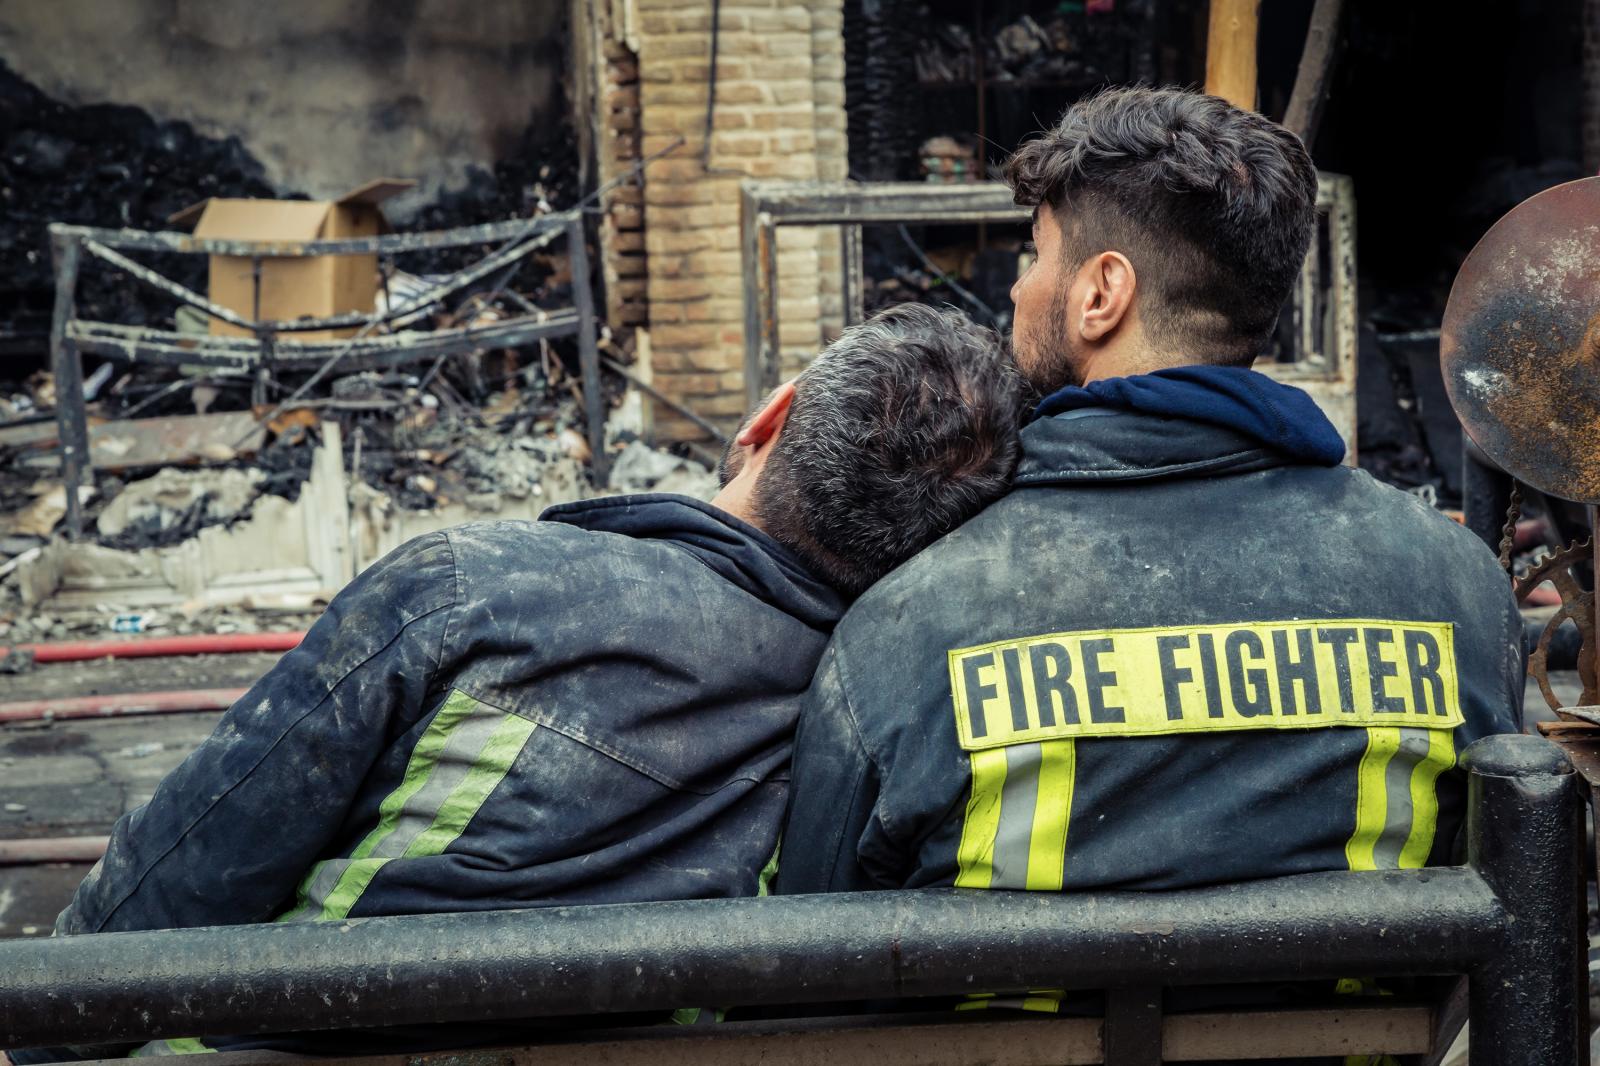 Market firefighters - 